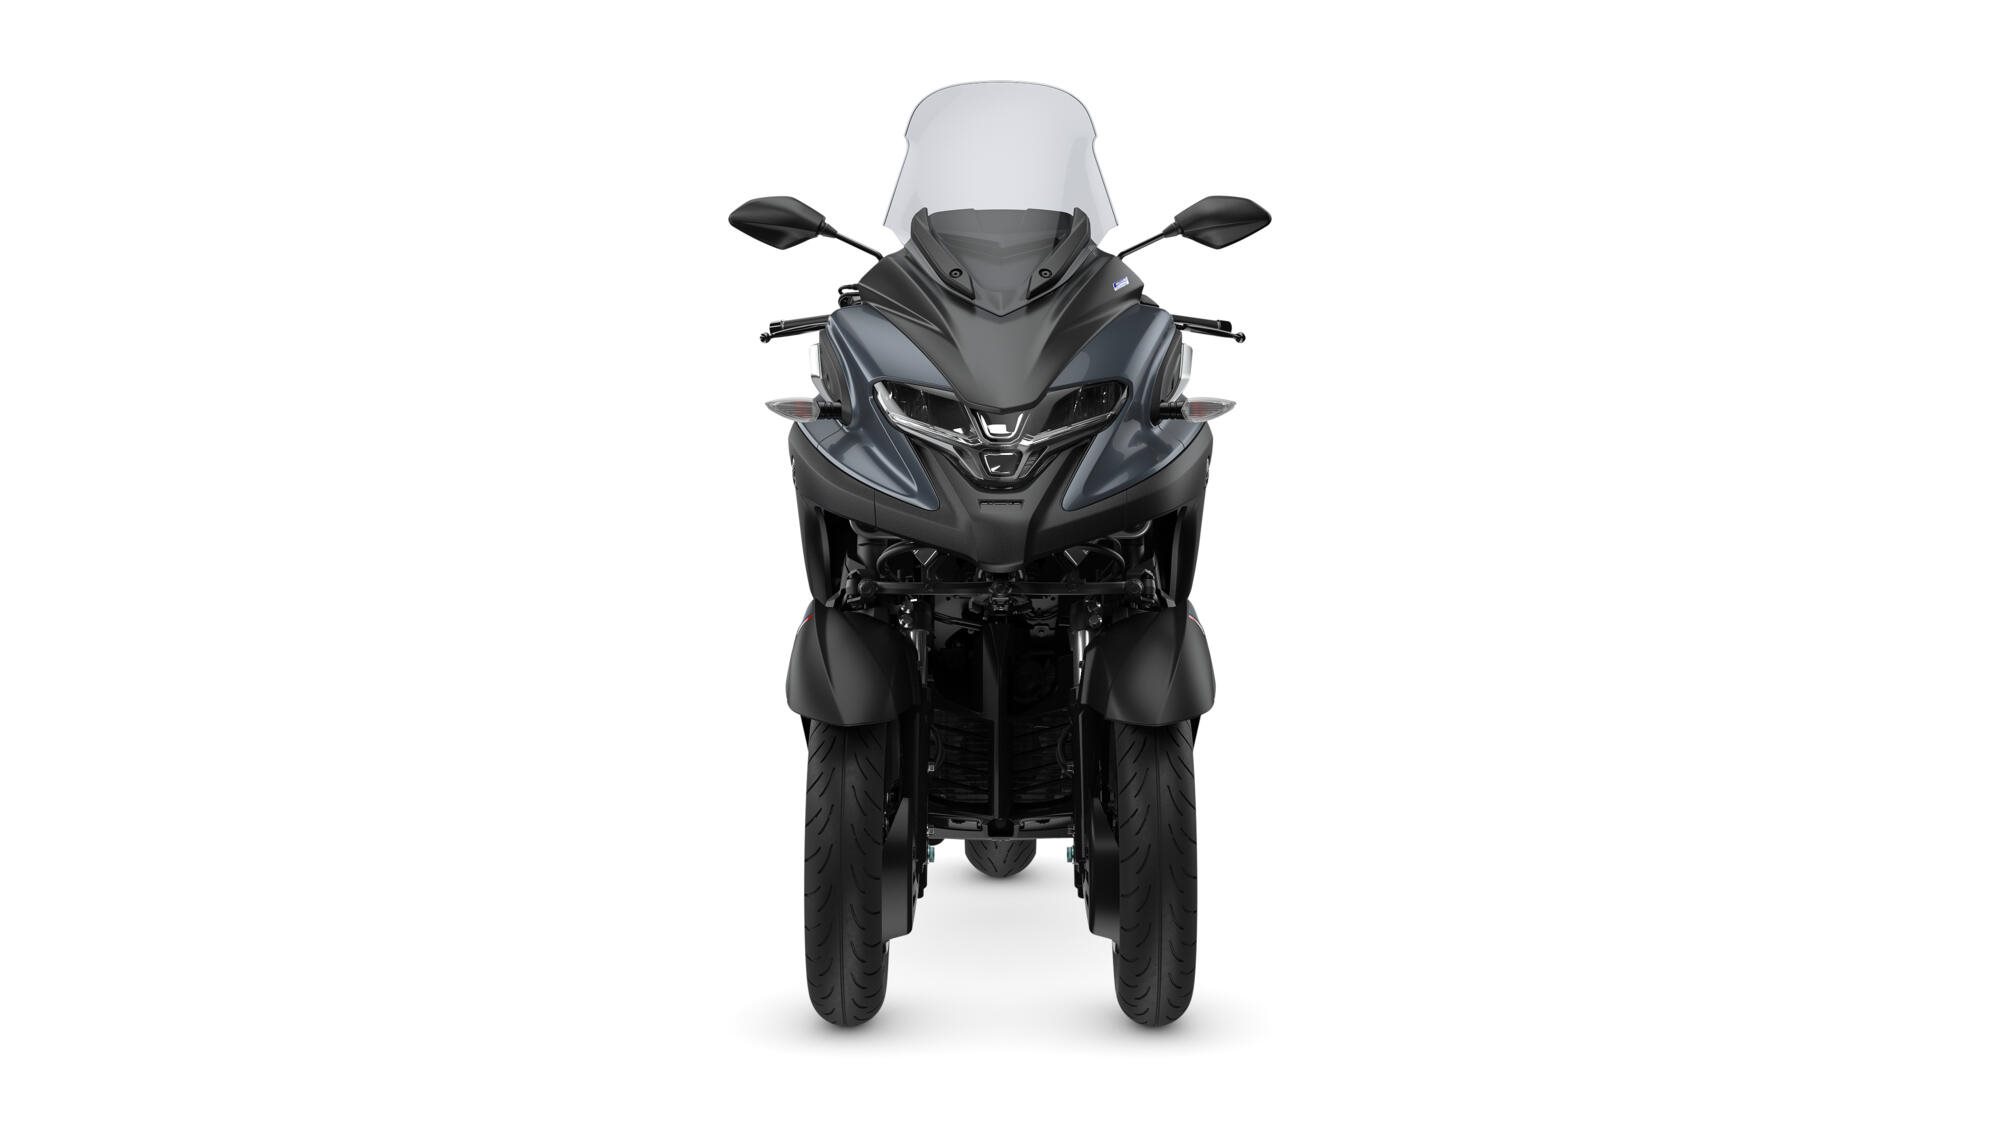 Yamaha Tricity 300 - Test, Gebrauchte, Bilder, technische Daten